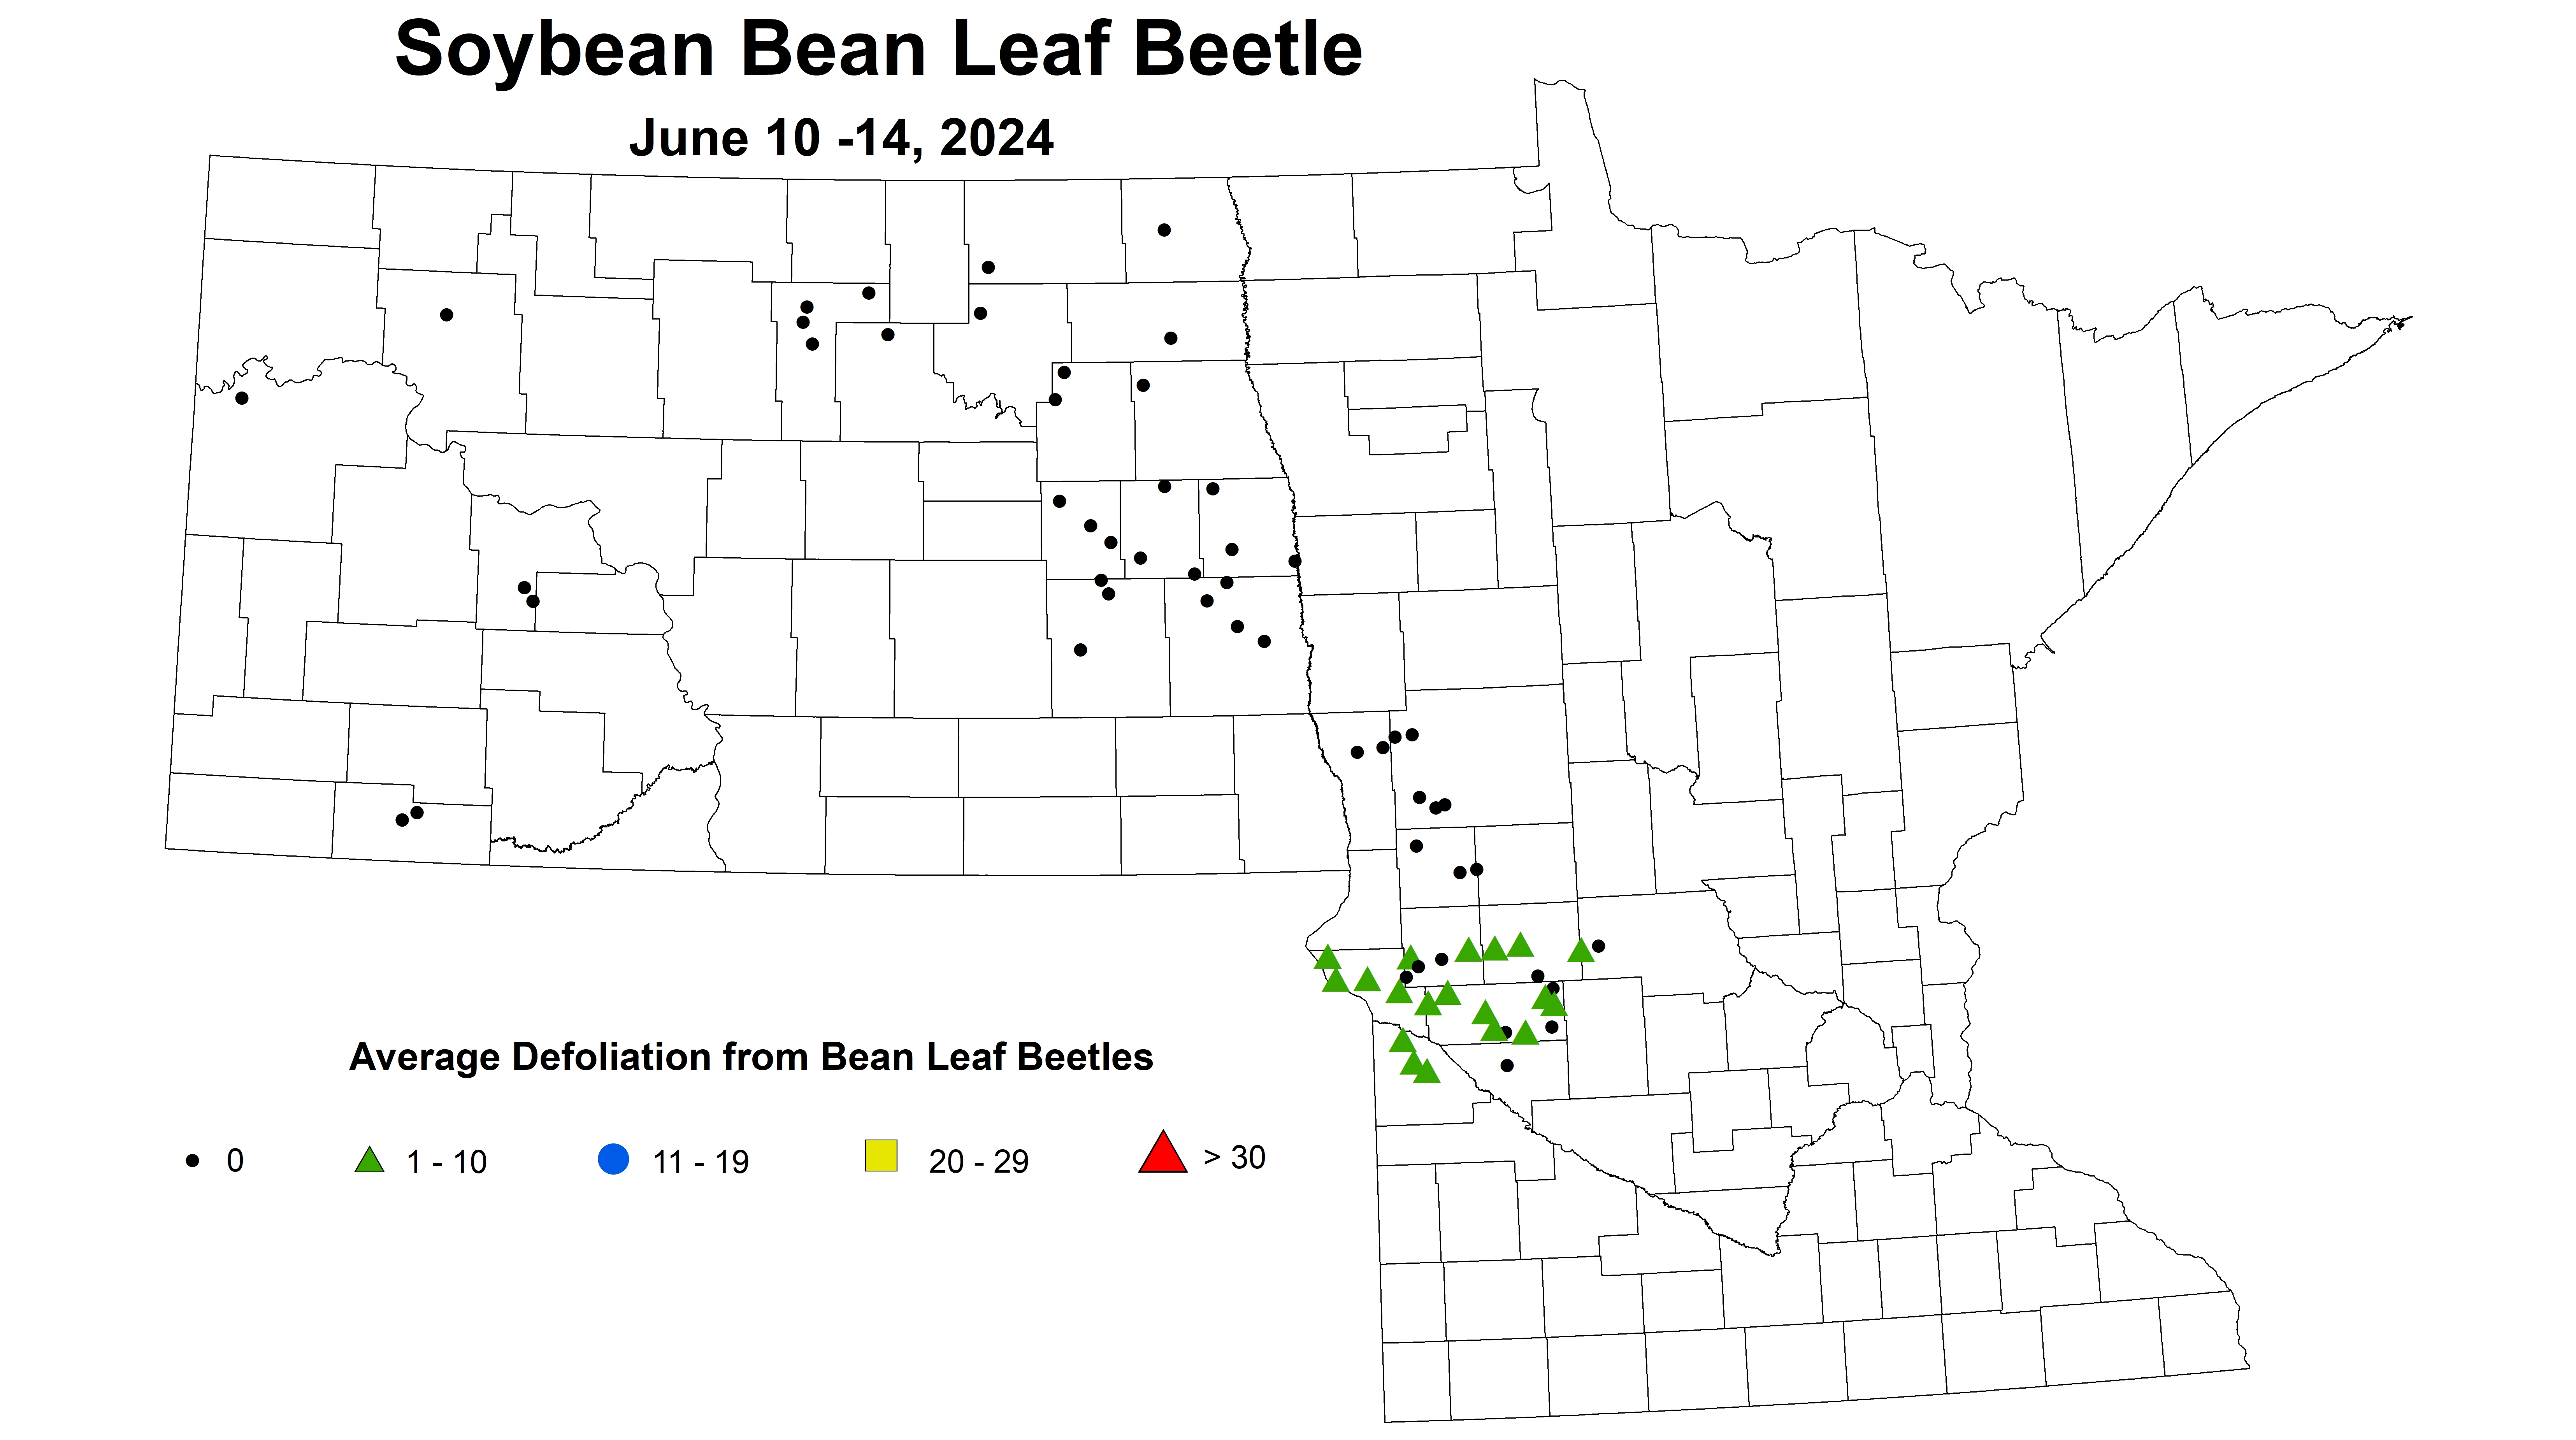 soybean average defoliation from bean leaf beetles June 10-14 2024